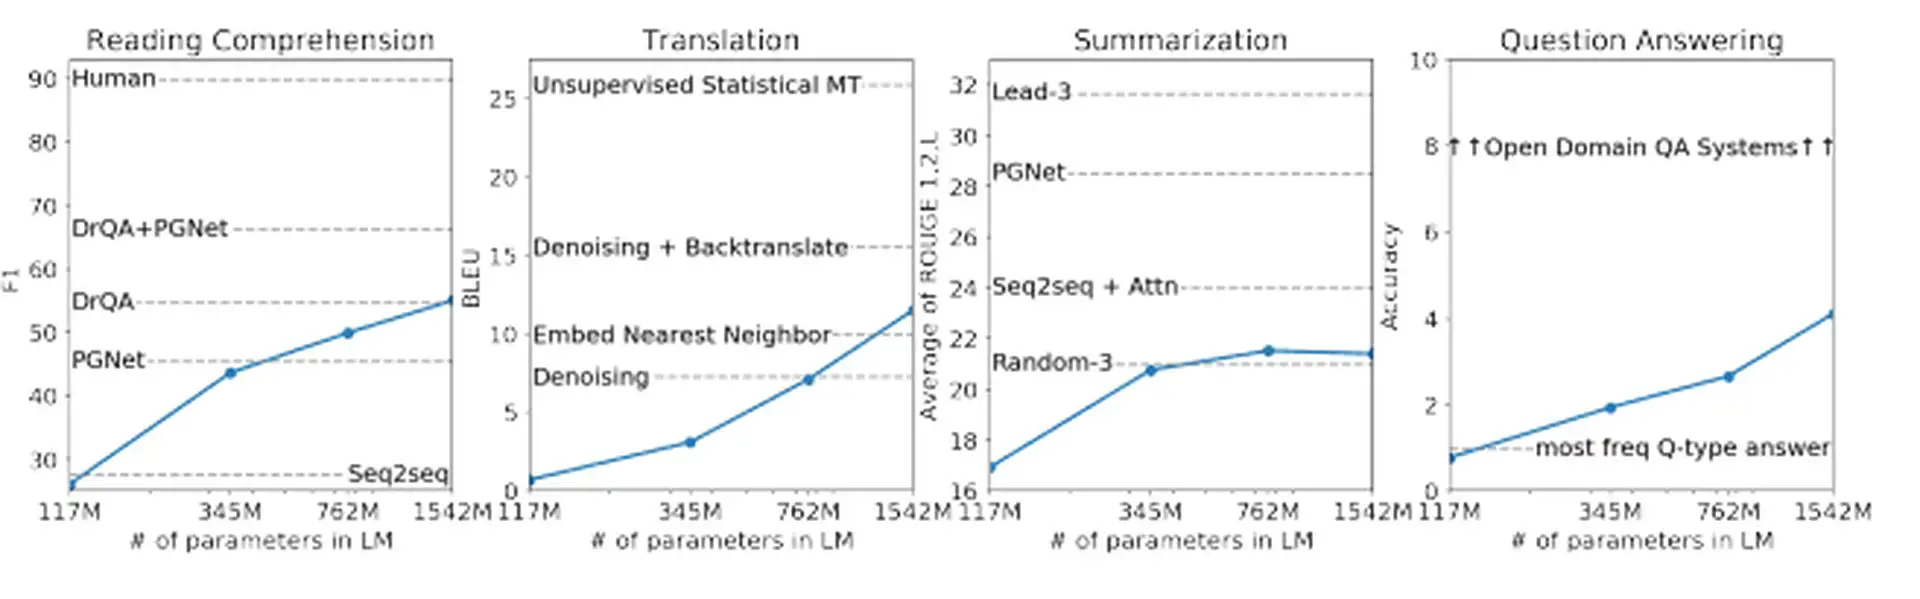 GPT5 väljalaskekuupäev ja muud kuulujutud: õppige AGI tähendust ja mõistke paremini ChatGPT-5 eeldatavaid funktsioone. Jätkake lugemist, et saada rohkem...